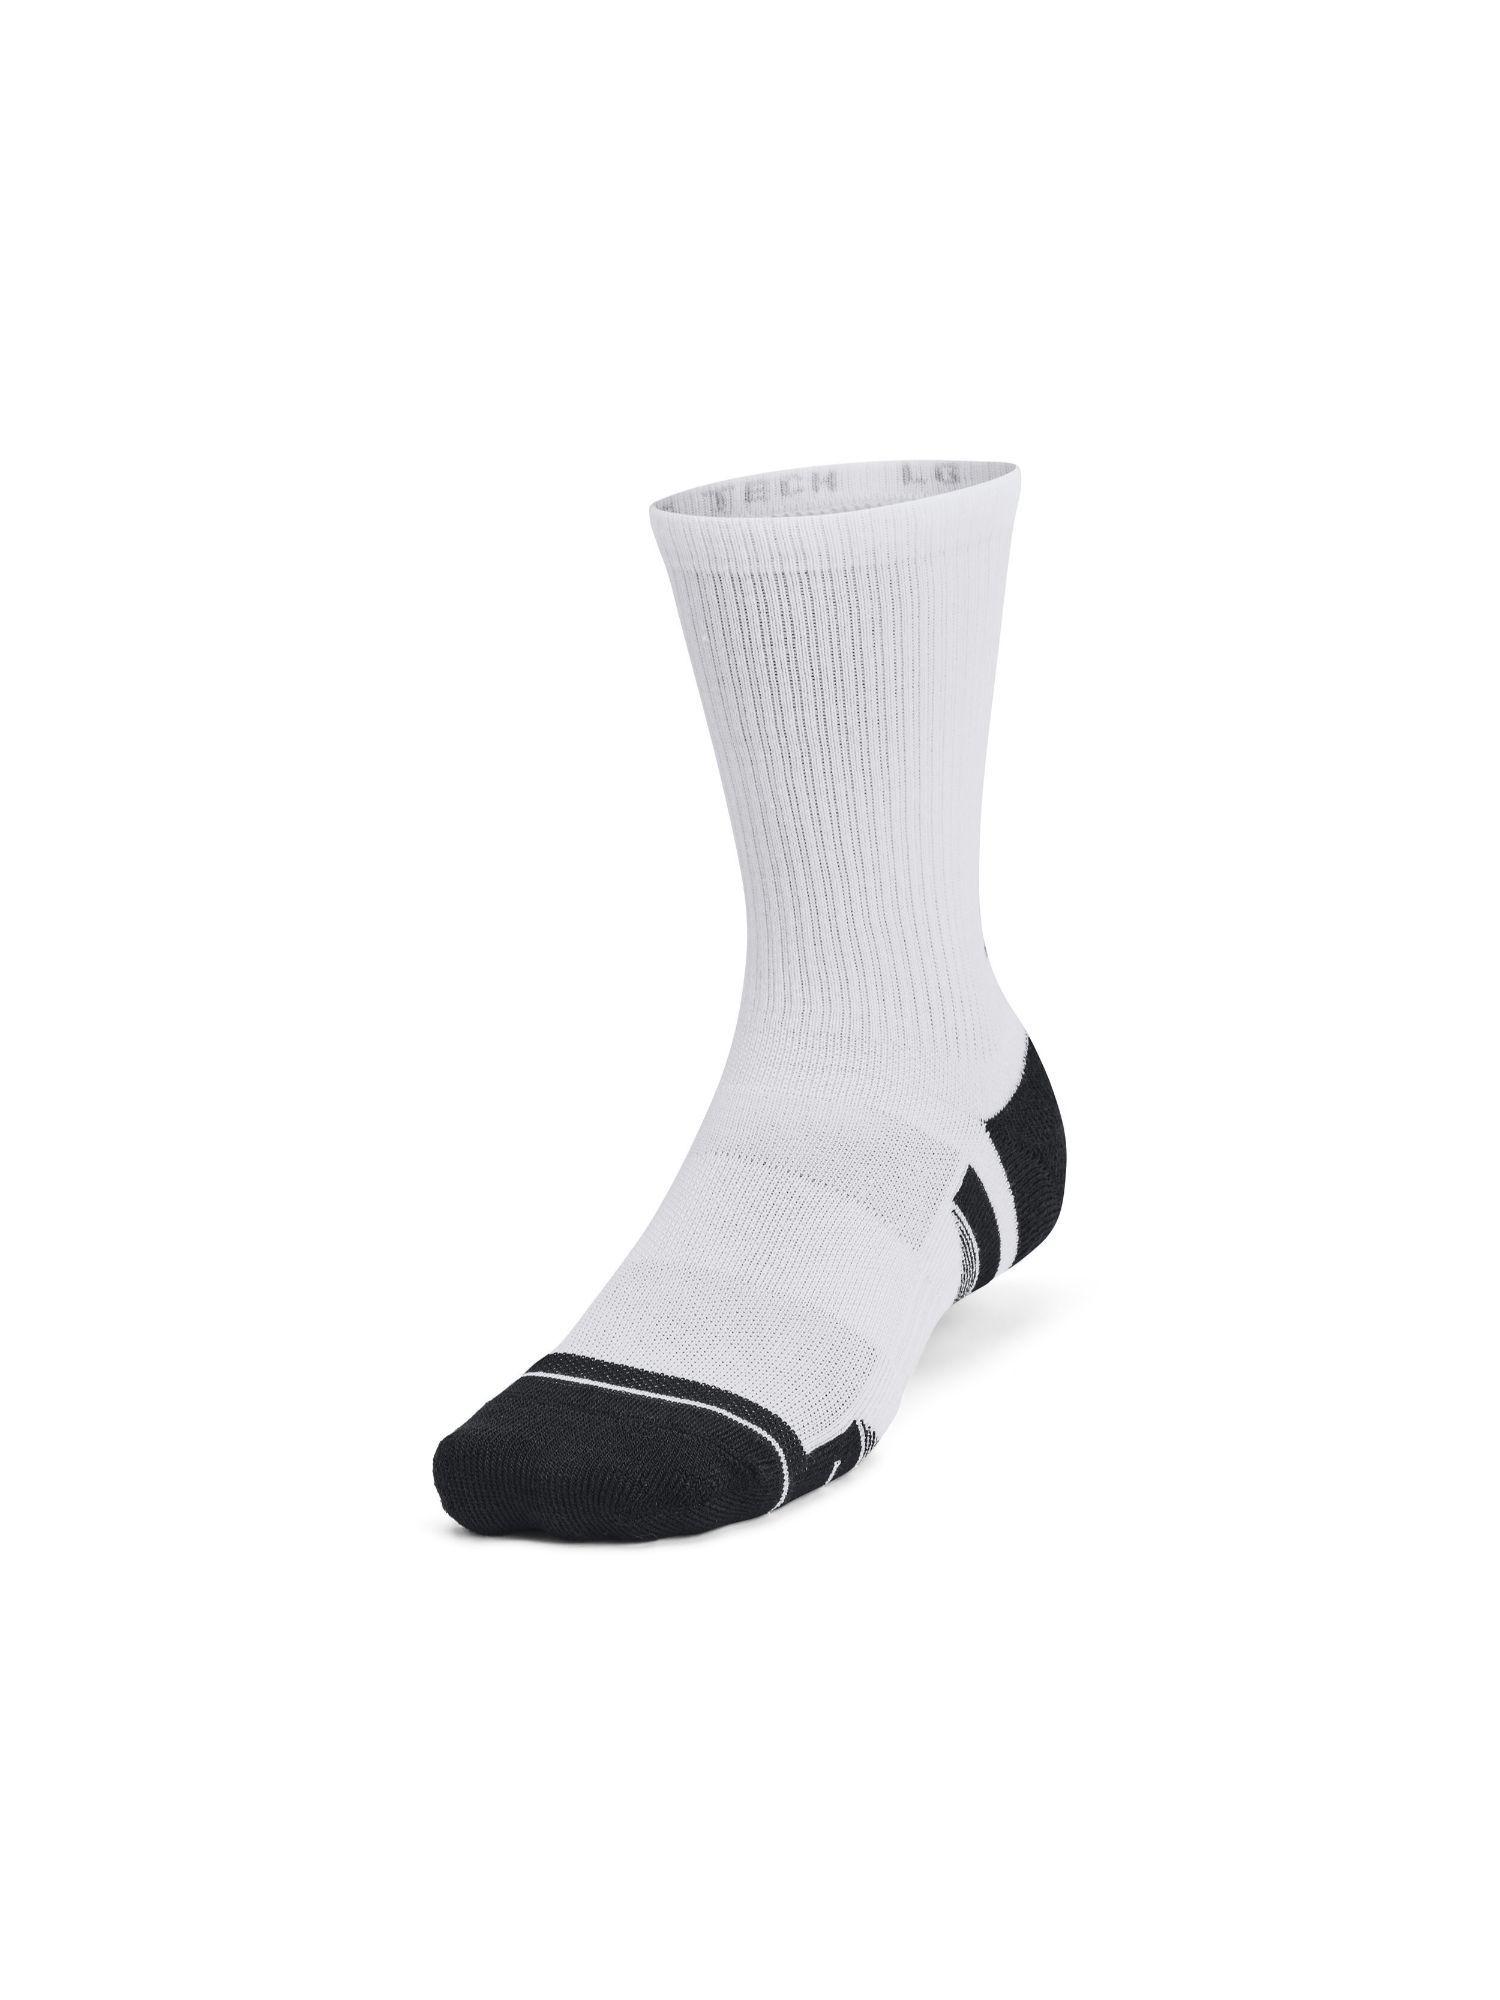 unisex performance tech novelty crew socks - white (pack of 3)